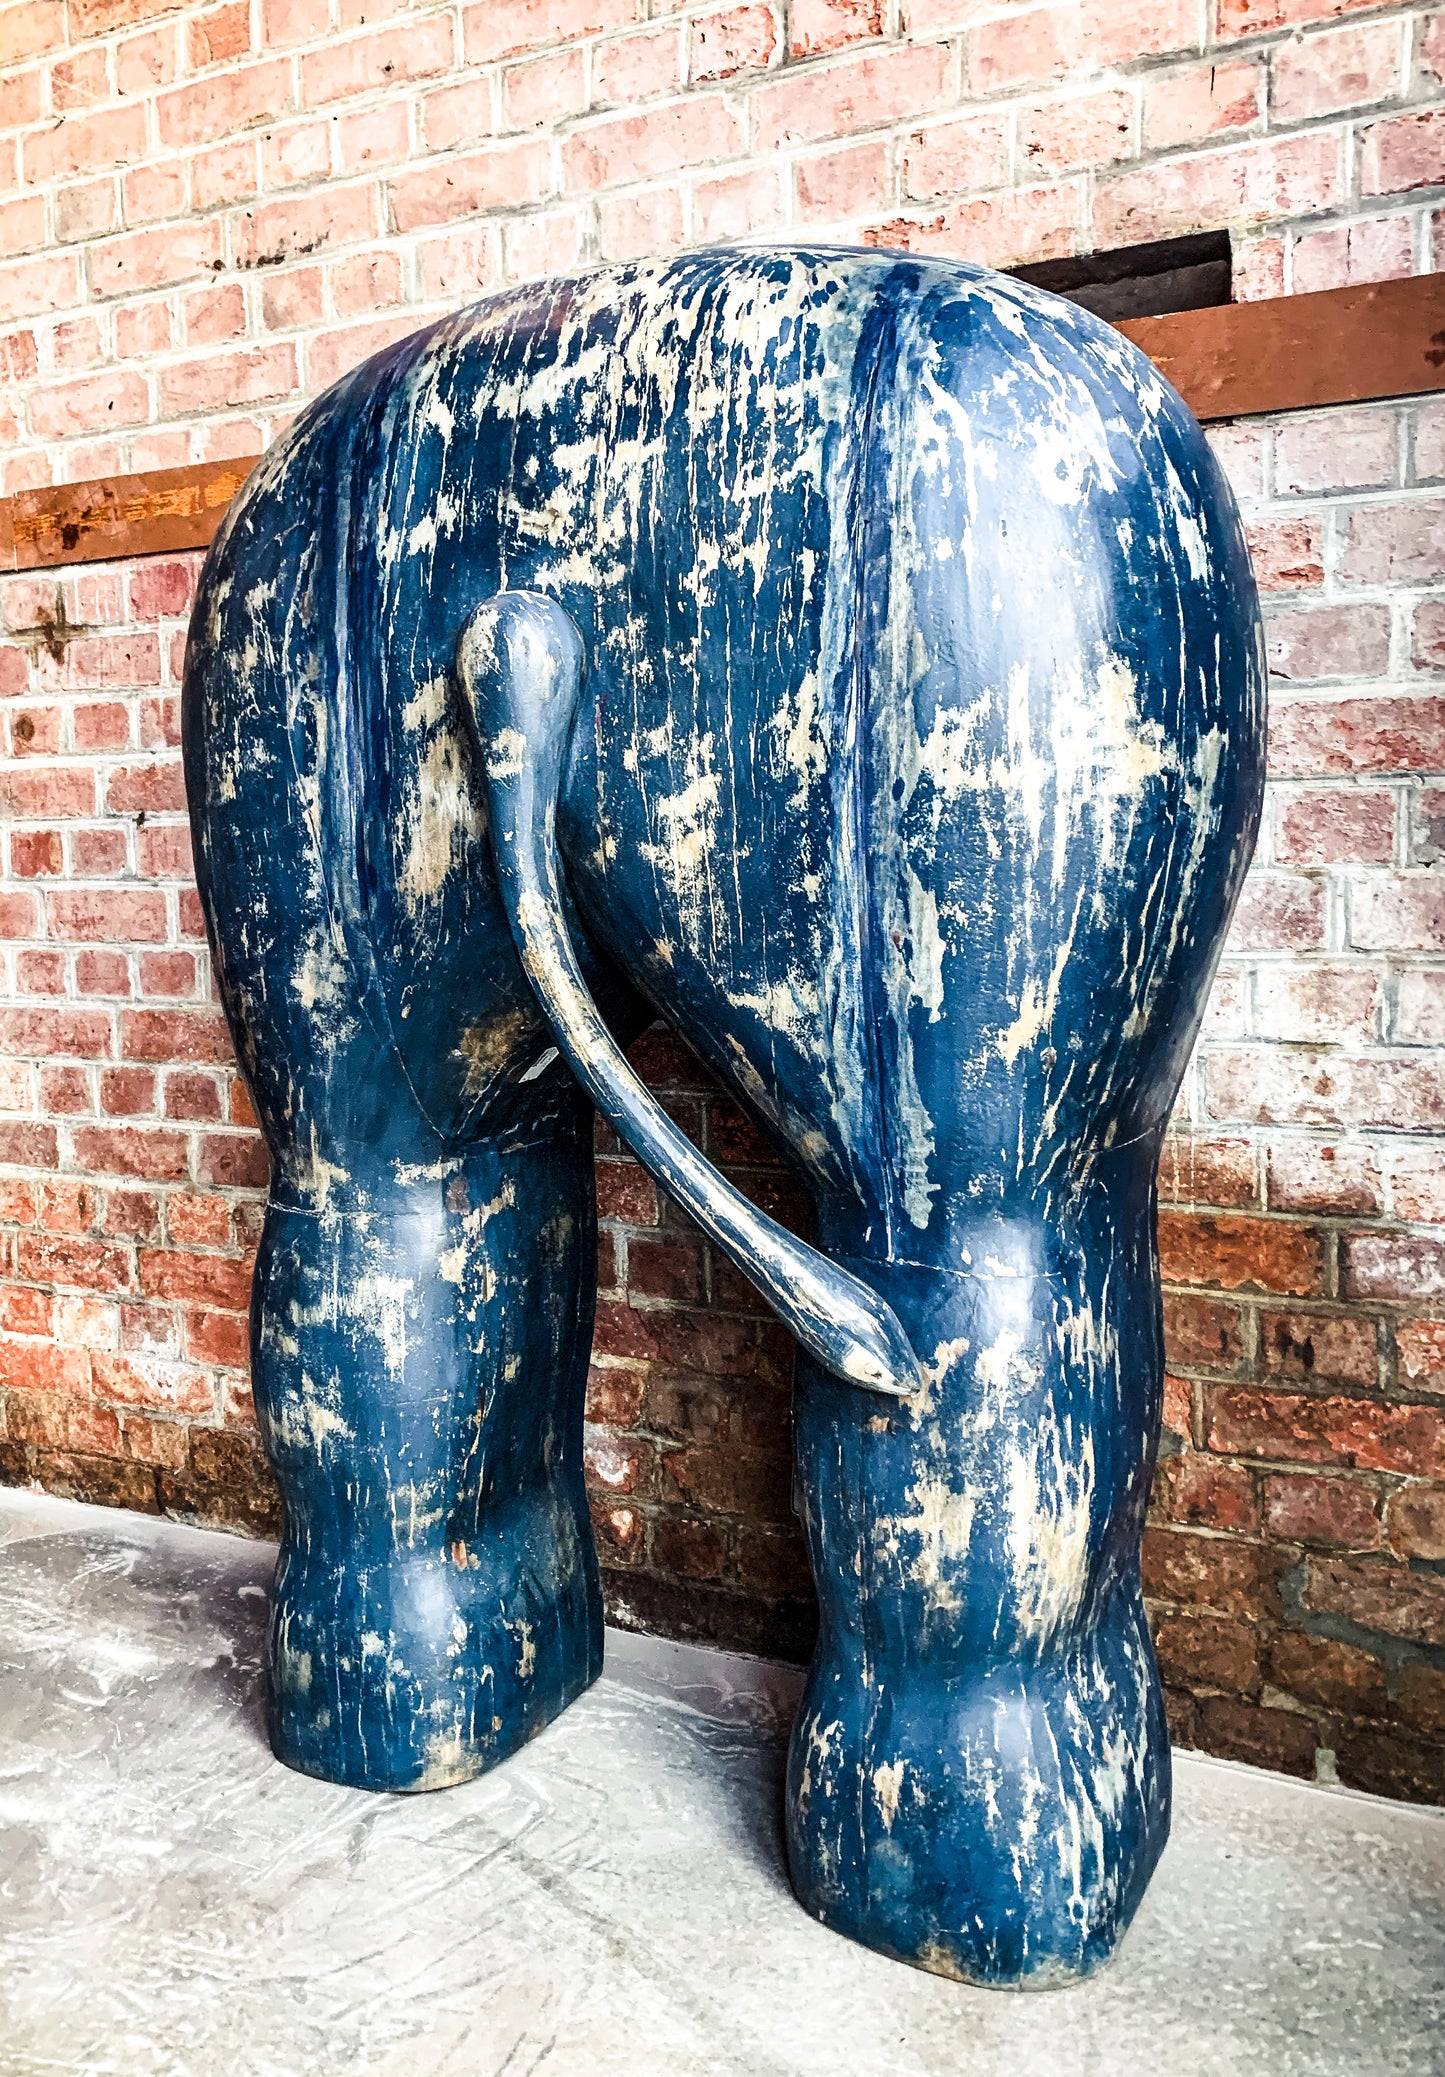 Elephant's butt